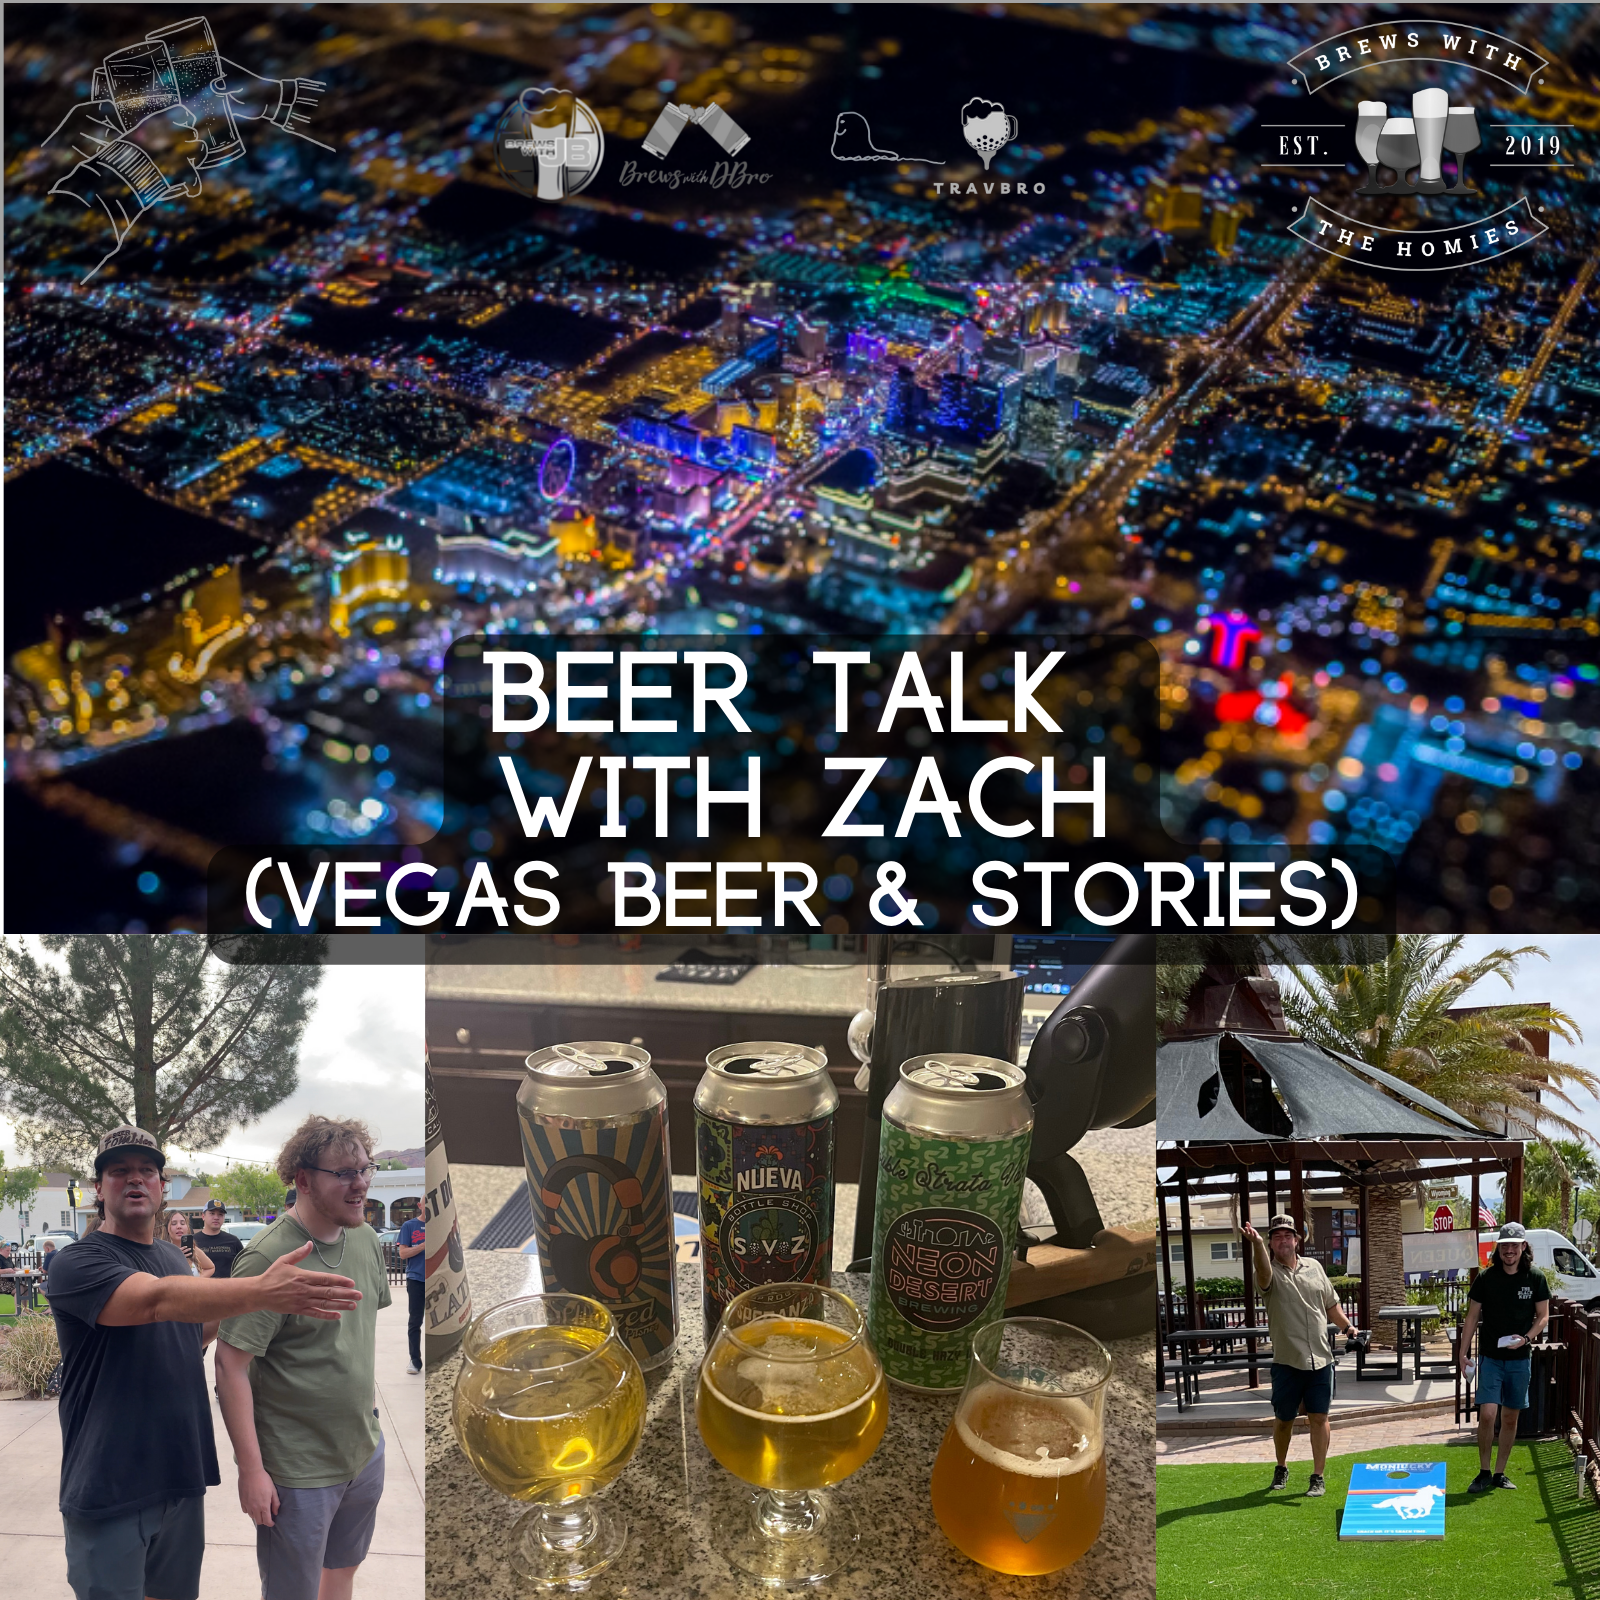 Beer talk with Zach (Vegas beer & stories)